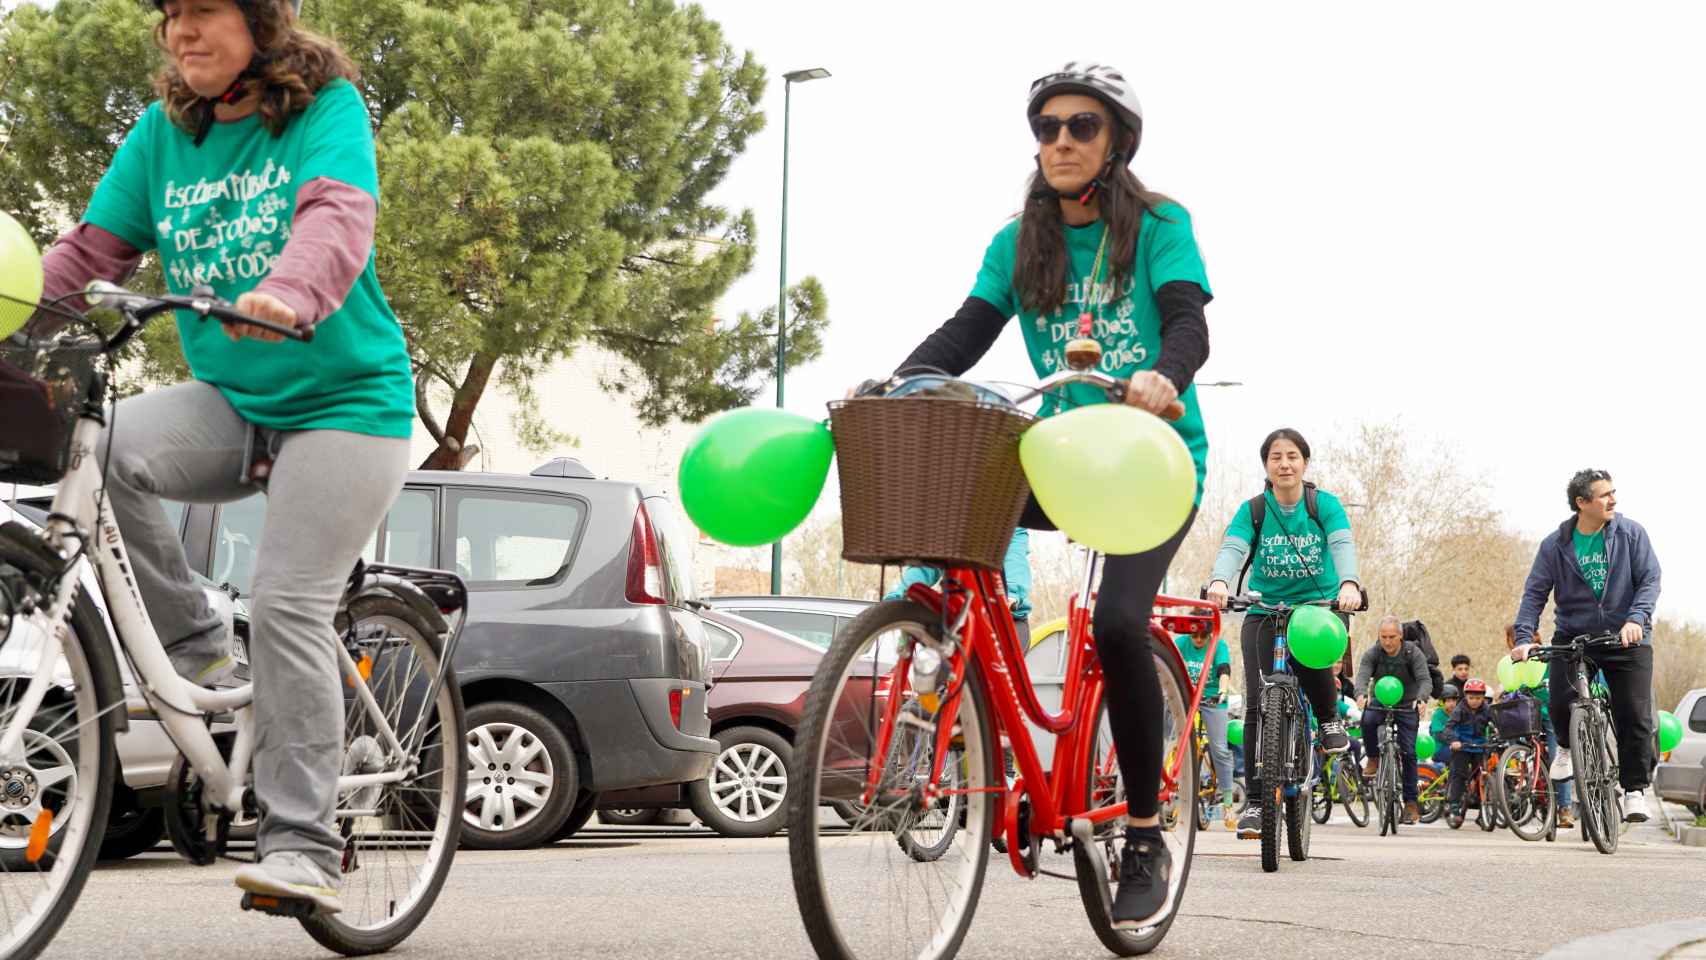 El Movimiento por la Escuela Pública, Laica y Gratuita de Valladolid celebra su tradicional Bicicletada por la Escuela Pública